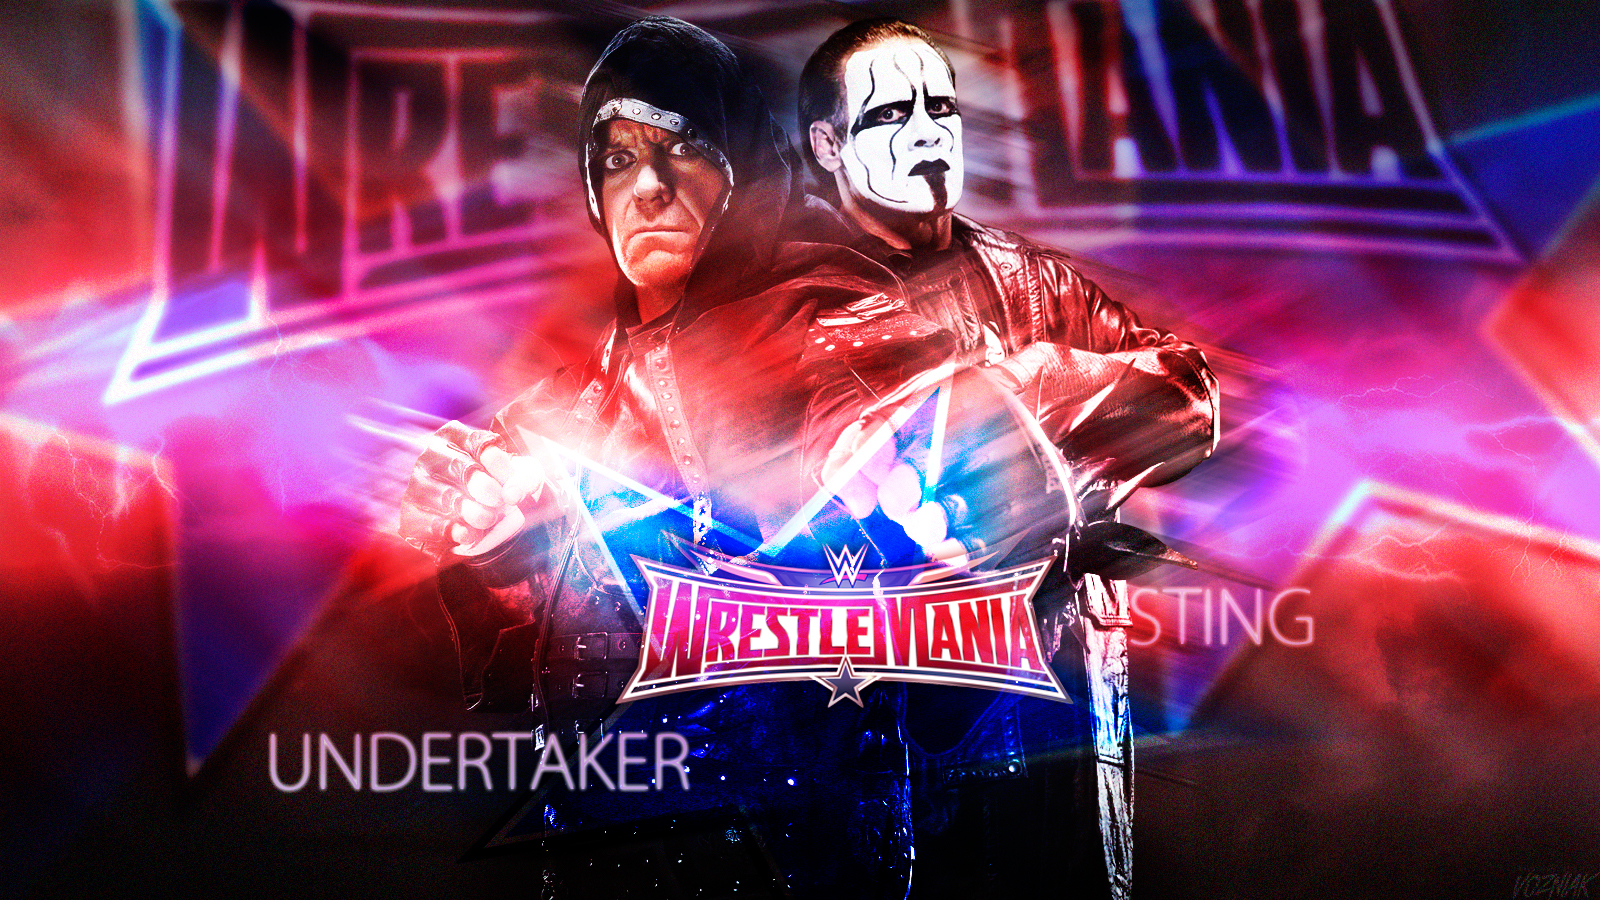 The Undertaker Vs Sting En Wwe Wrestlemania Wallpaper By